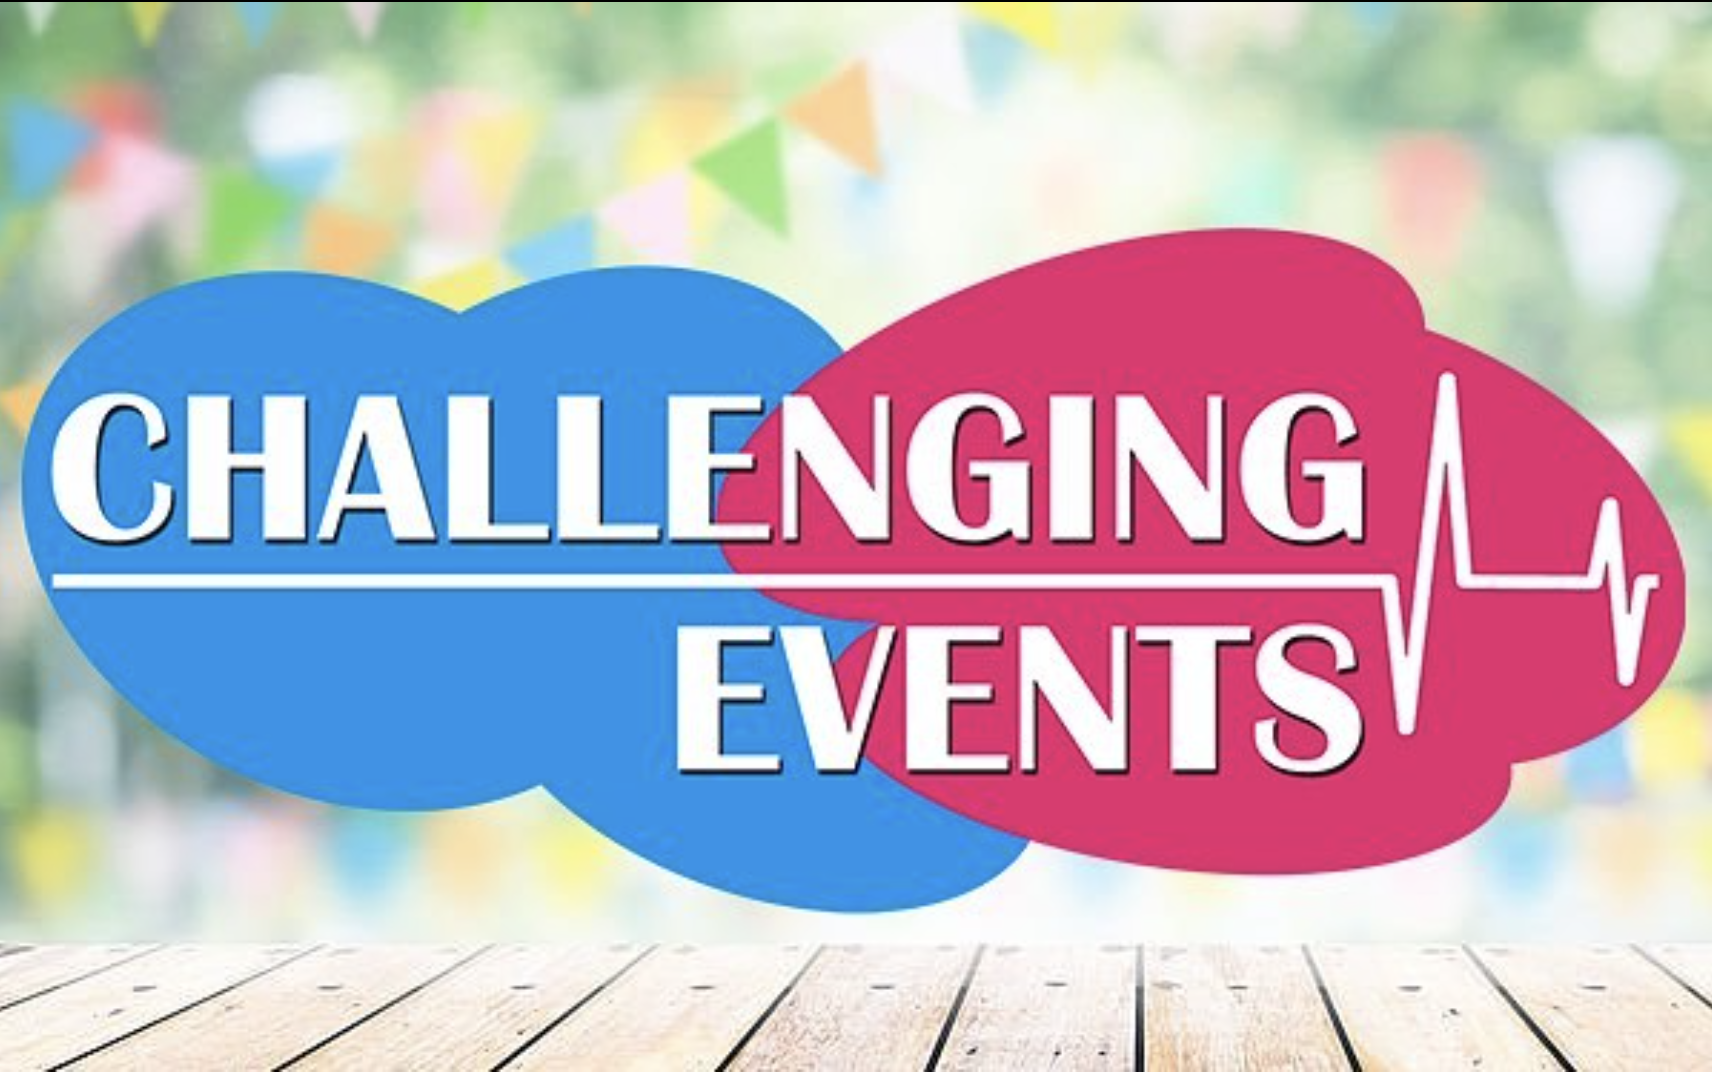 Challenging Events - Events met een twist